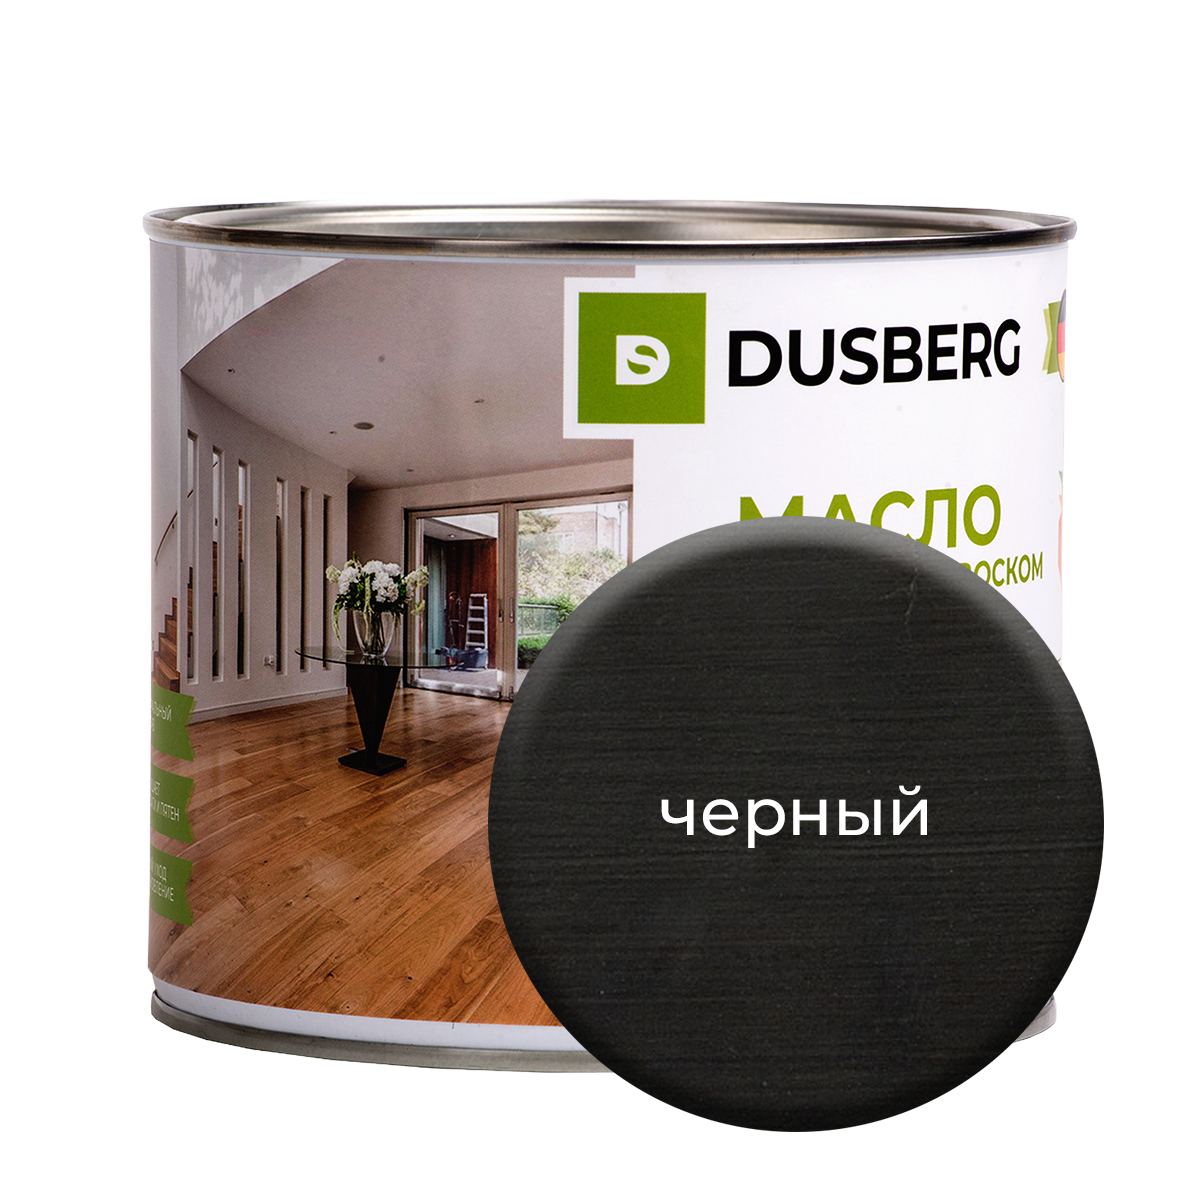 Масло Dusberg с твердым воском на бесцветной основе, 2 л Черный масло dusberg для дерева на бесцветной основе 750 мл палисандр